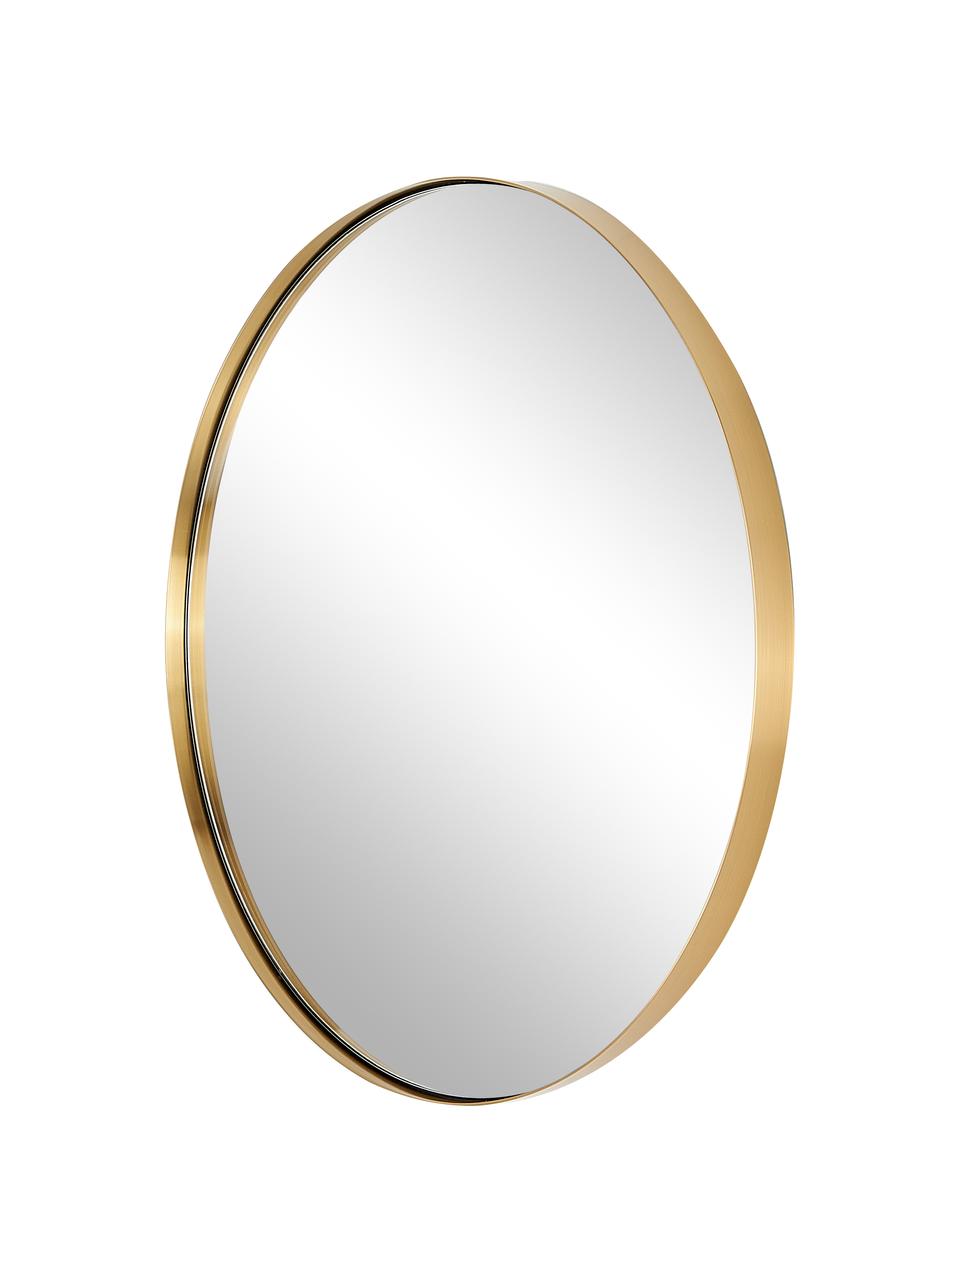 Specchio rotondo da parete con cornice in metallo dorato Lacie, Cornice: metallo rivestito, Superficie dello specchio: lastra di vetro, Dorato, Ø 55 cm